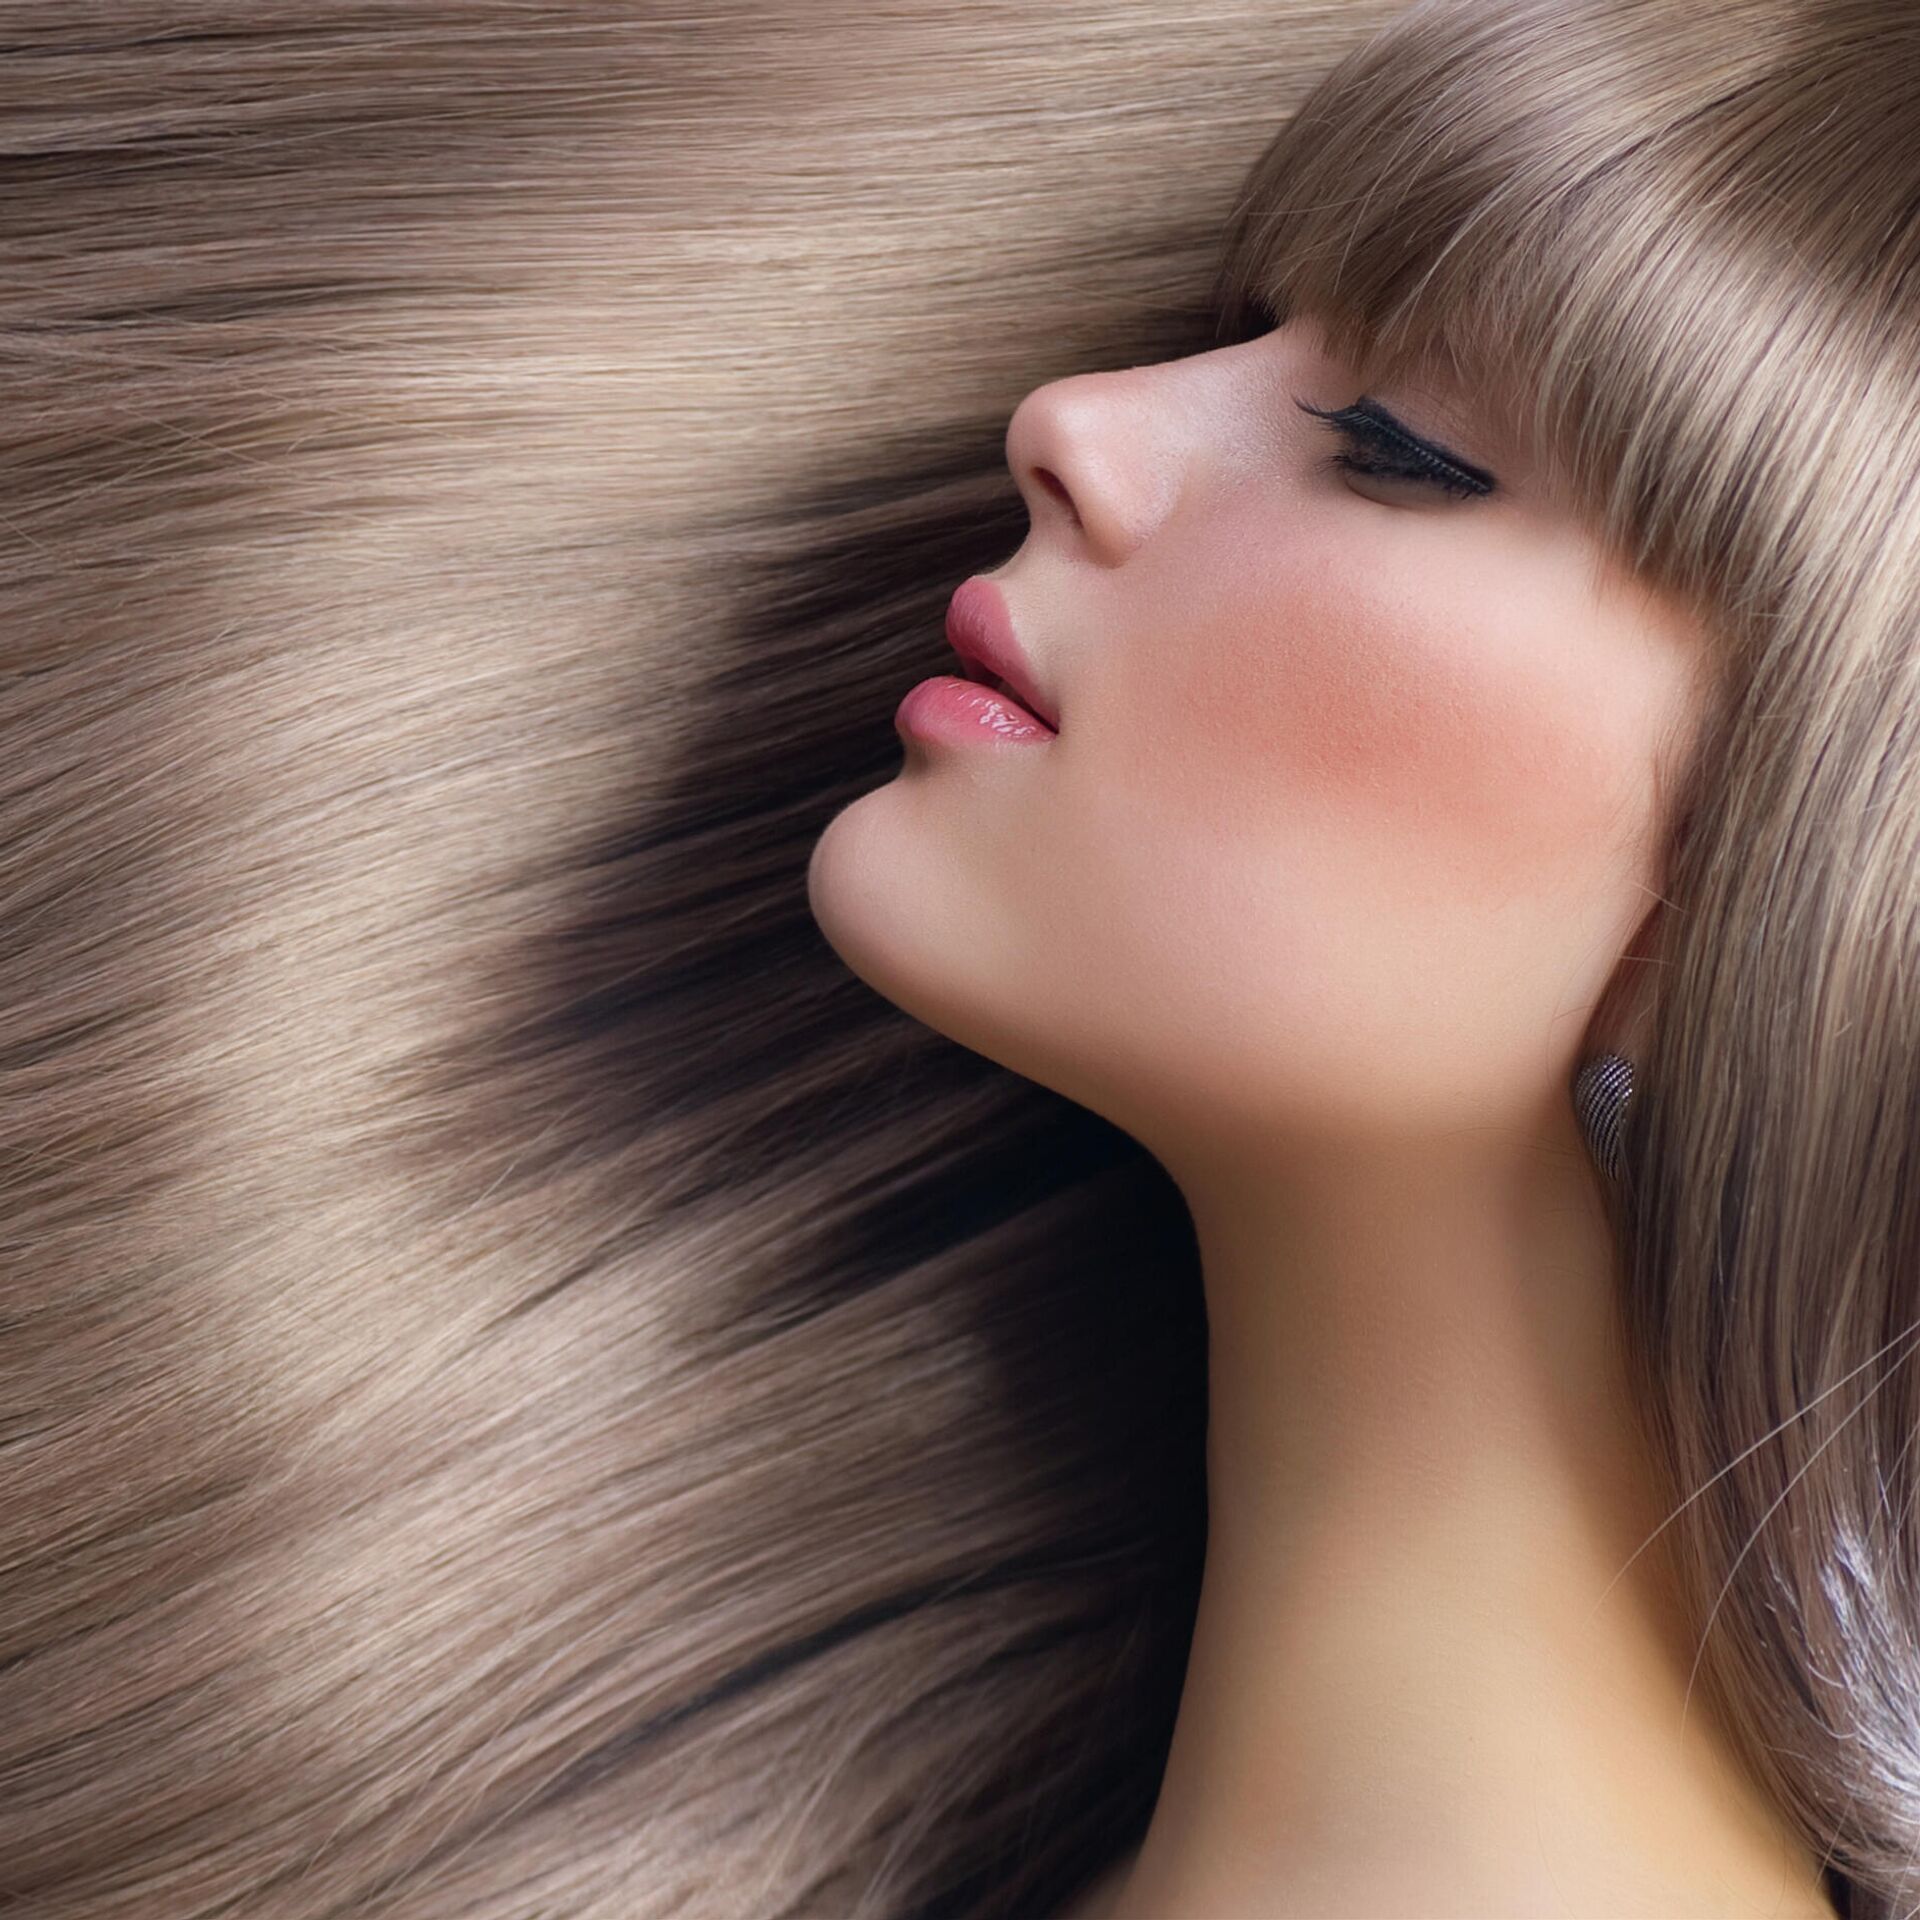 Укрепление волос в домашних условиях: лучшие рецепты и эффективные способы